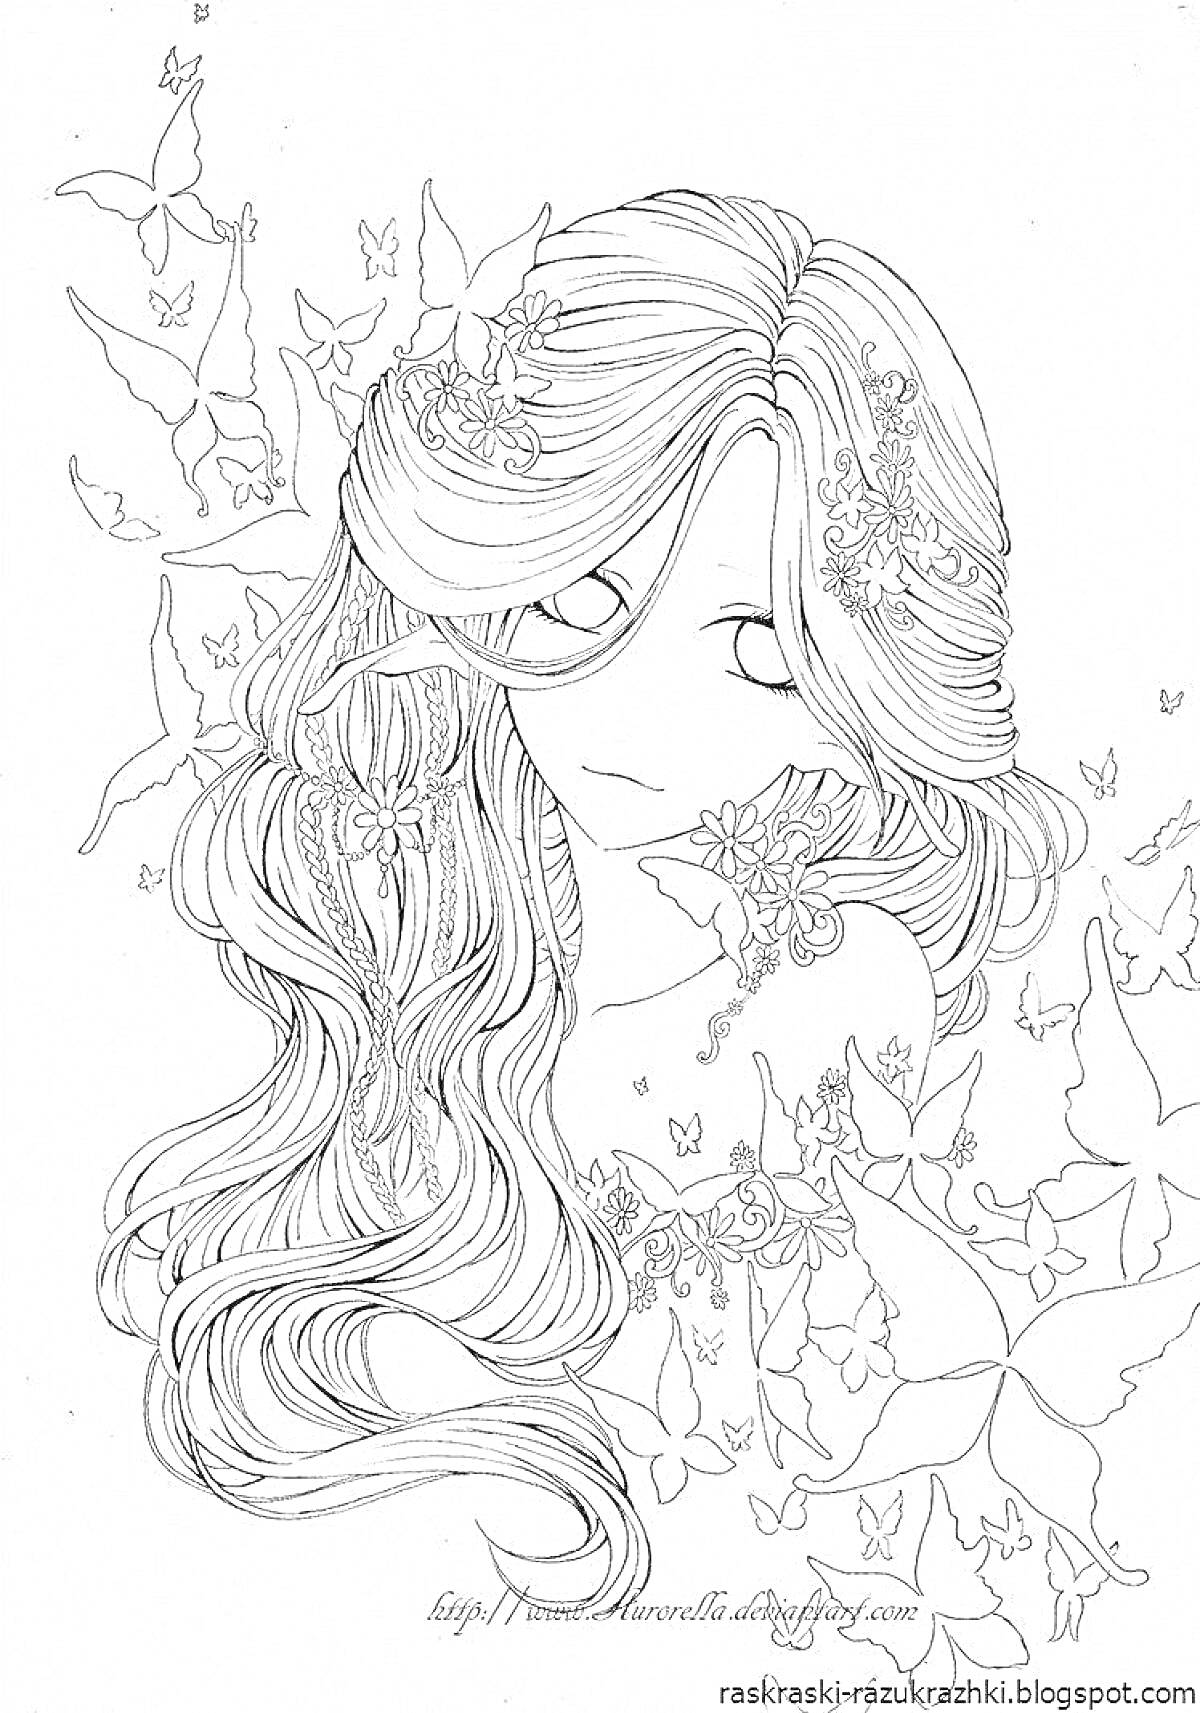 Раскраска Девушка с длинными волосами, украшенная цветами и бабочками, с большими глазами и взглядом в сторону